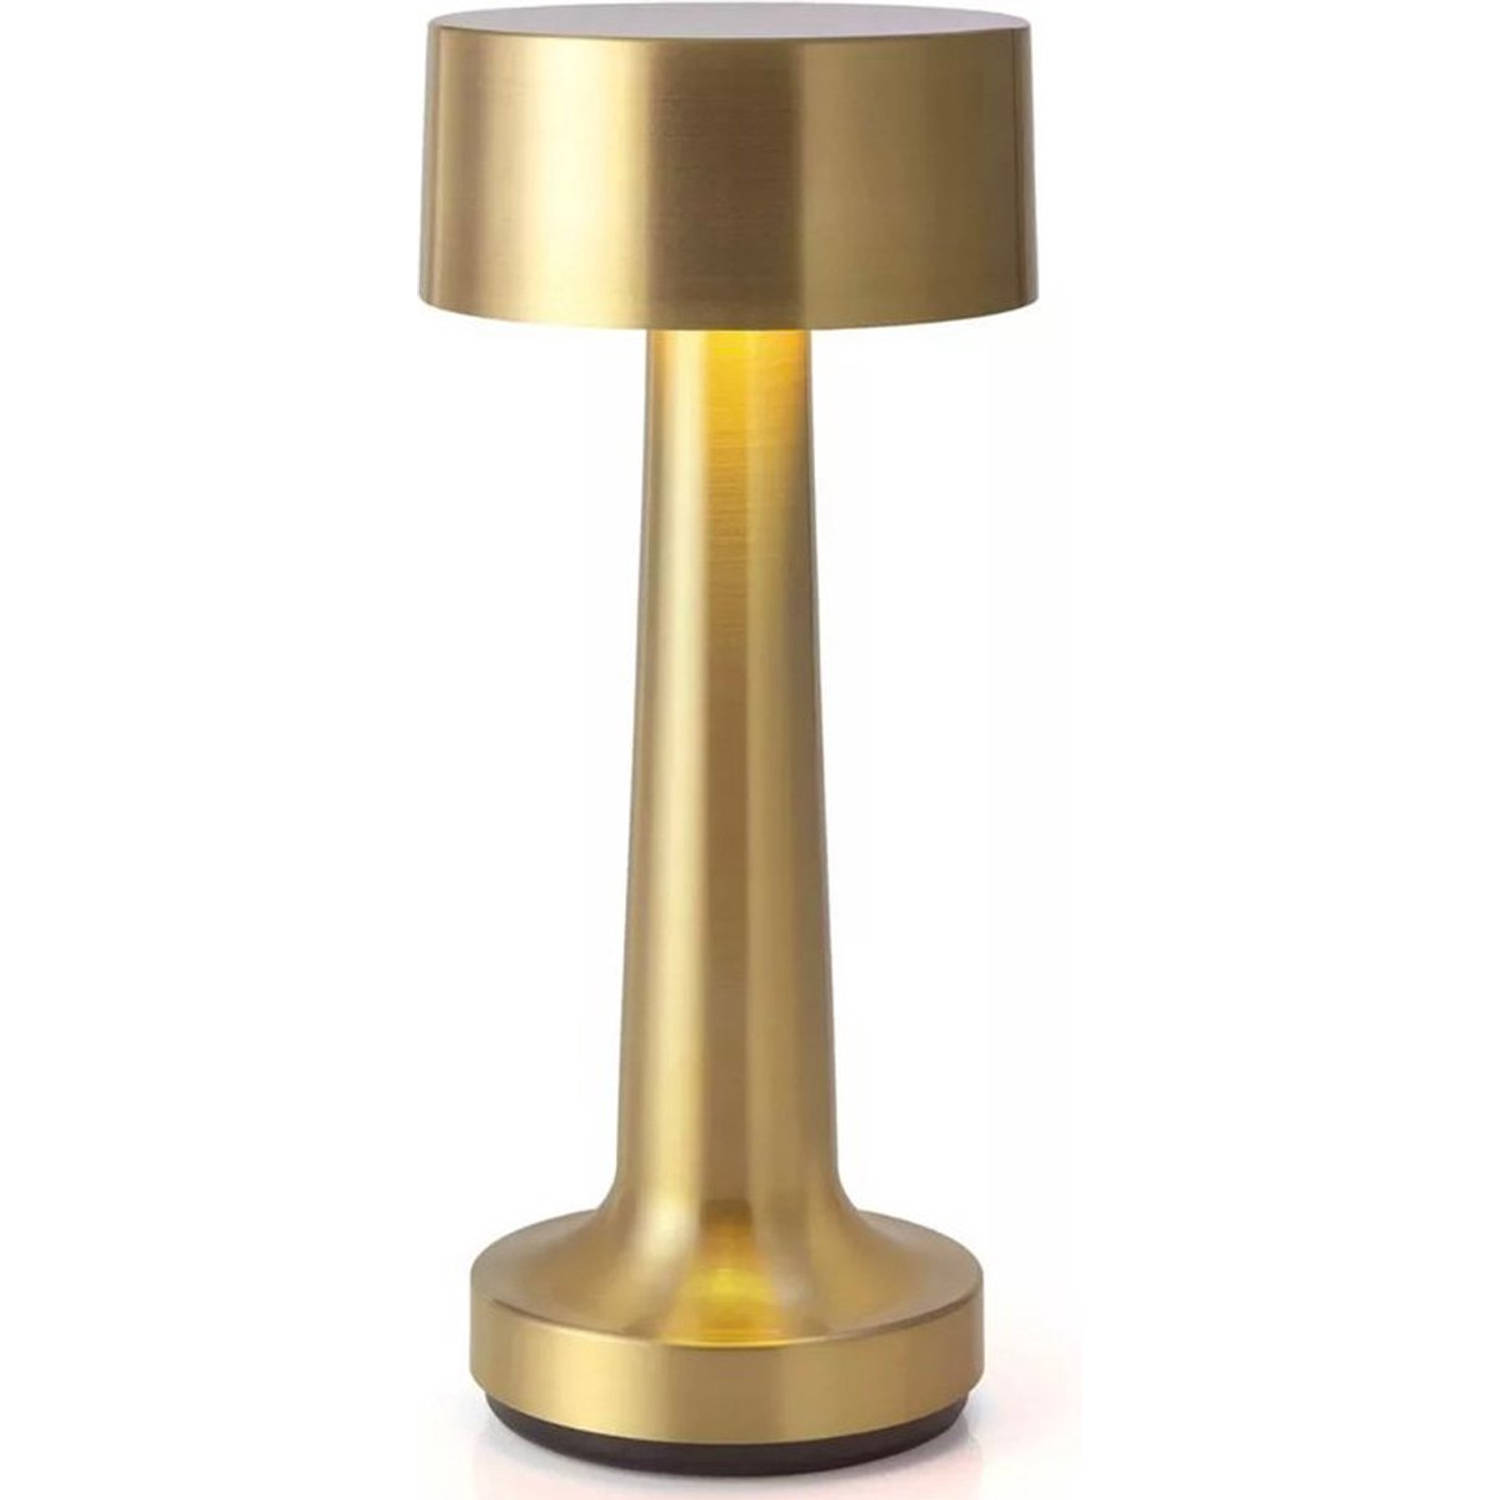 Goliving tafellamp op batterijen - Oplaadbaar en dimbaar - Moderne touch lamp goud - Nachtlamp draadloos